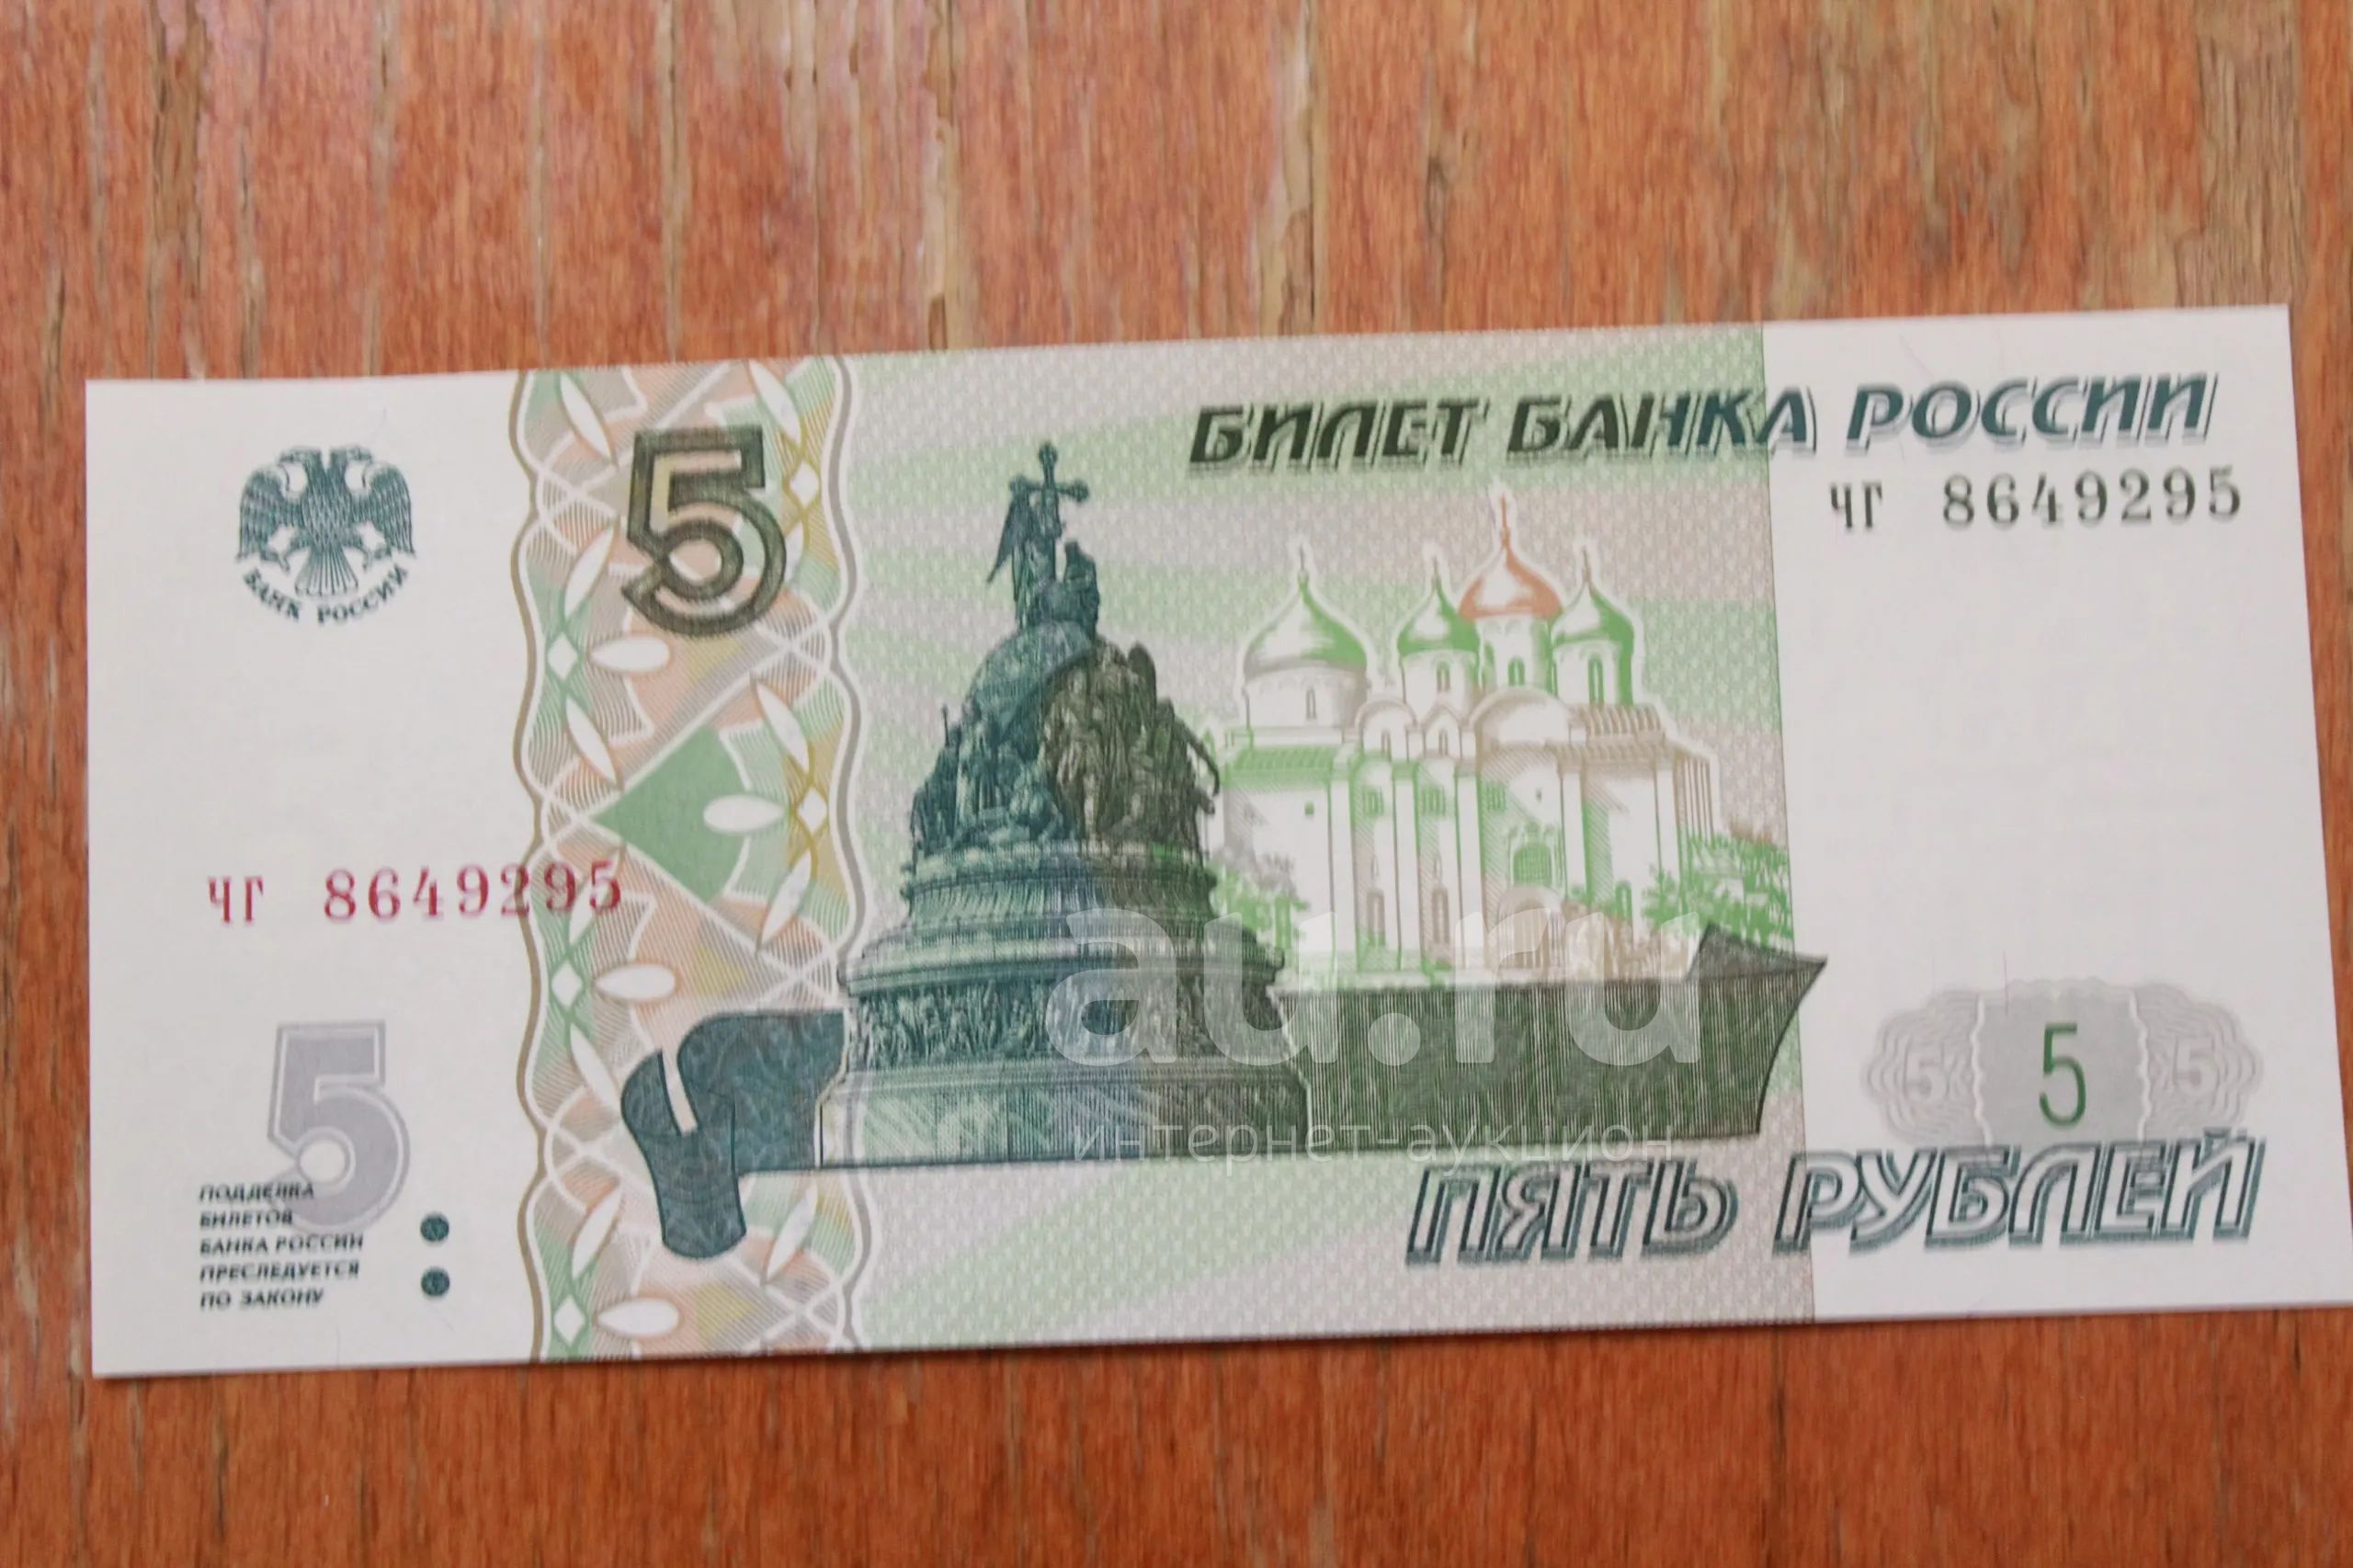 5 рублей в долларах. Купюра 5 рублей. Банкнота 5 рублей. Купюра 5 руб 1997 года. Купюра 5 рублей 1997.